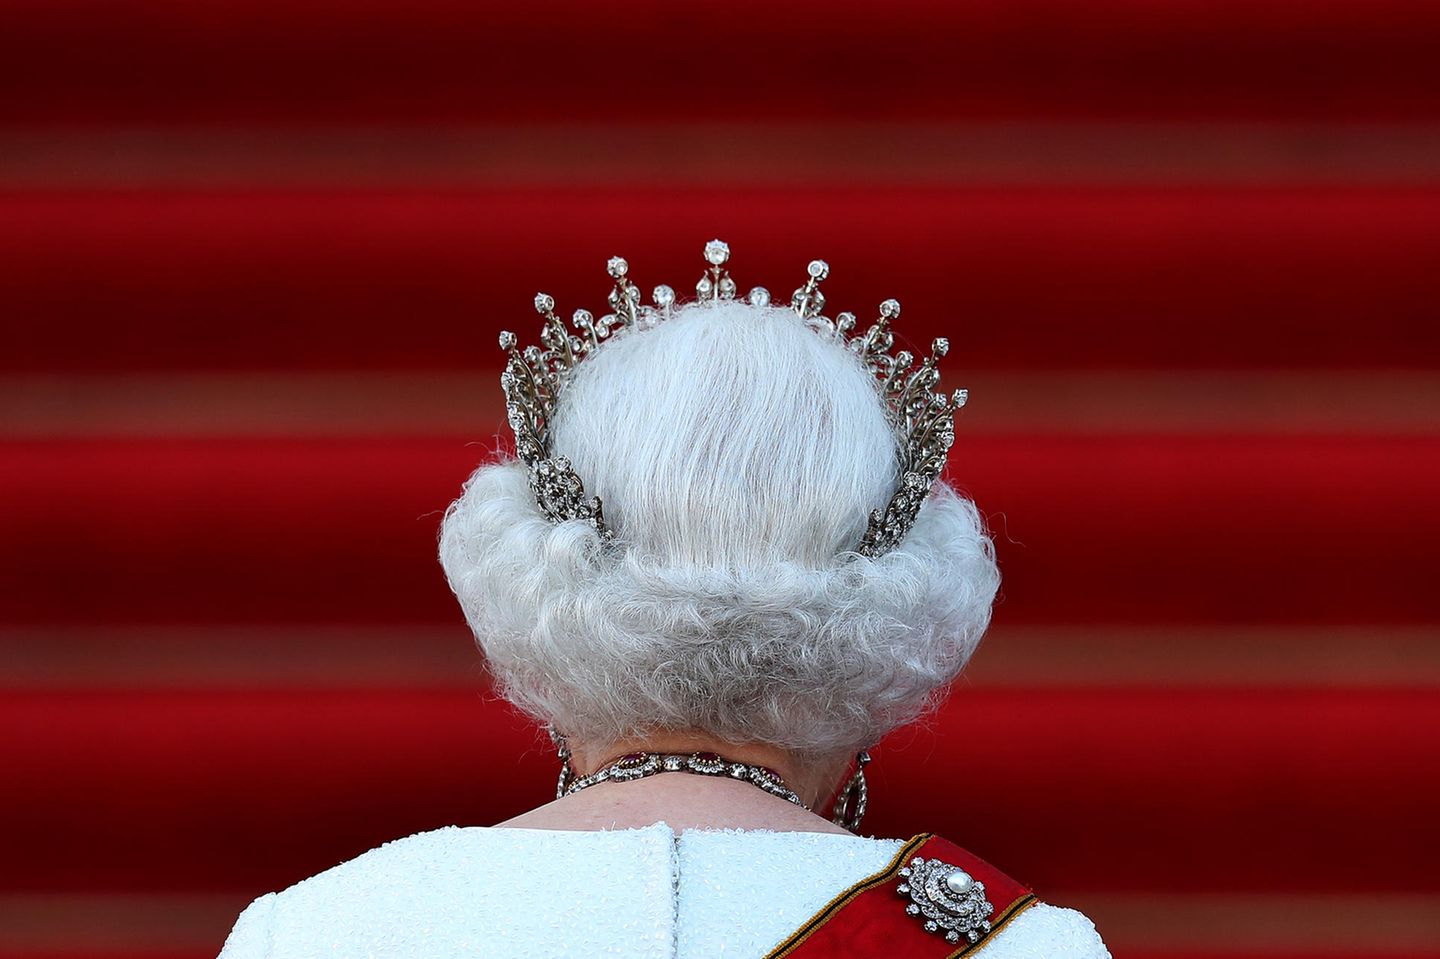 Queen Elizabeth ist seit 6. Februar 1952 Königin. England ohne sie? Für viele kaum vorstellbar.